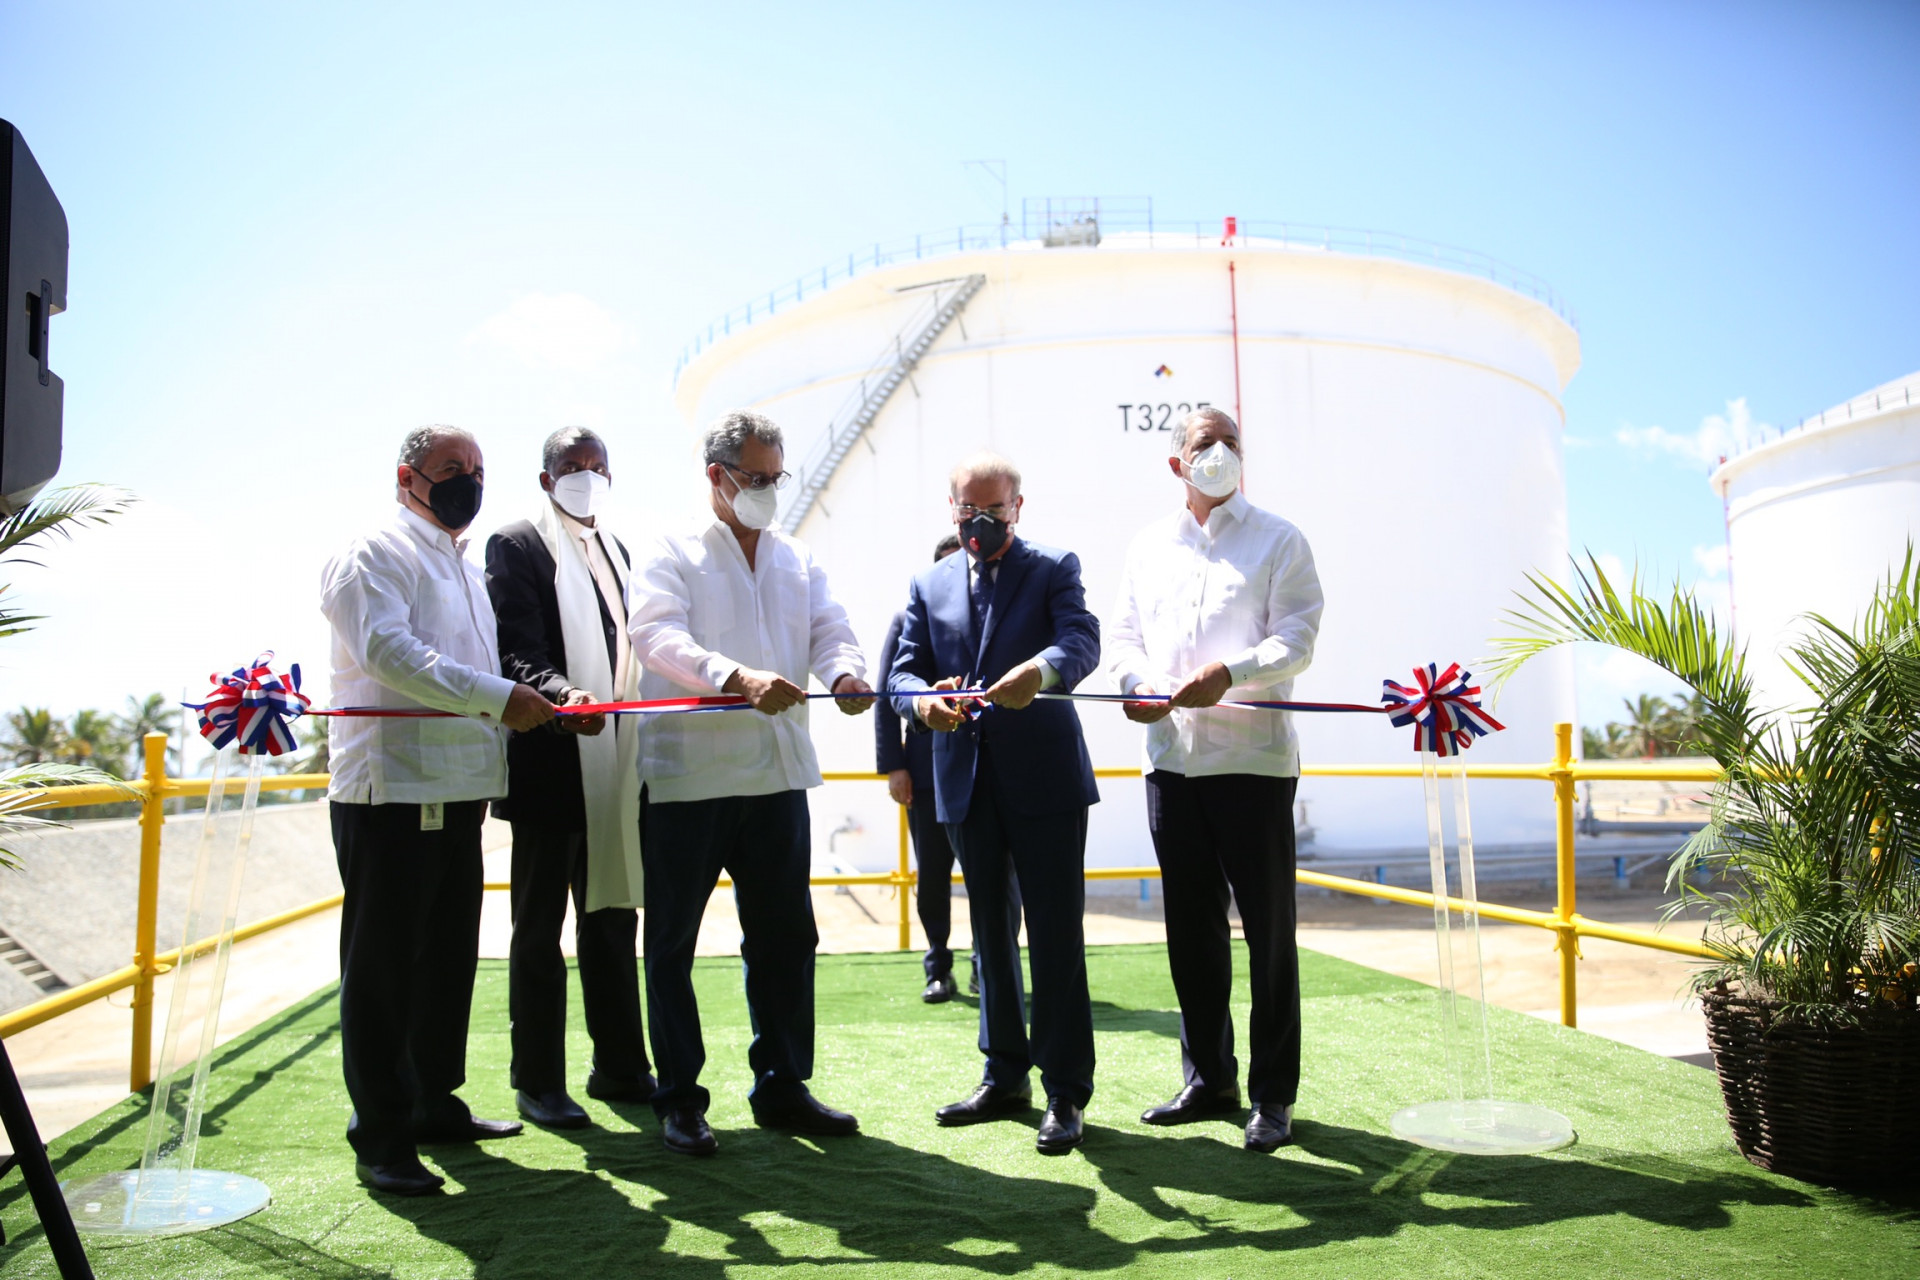 REPÚBLICA DOMINICANA: Presidente Danilo Medina encabeza puesta en funcionamiento nuevos tanques de almacenamiento Refidomsa